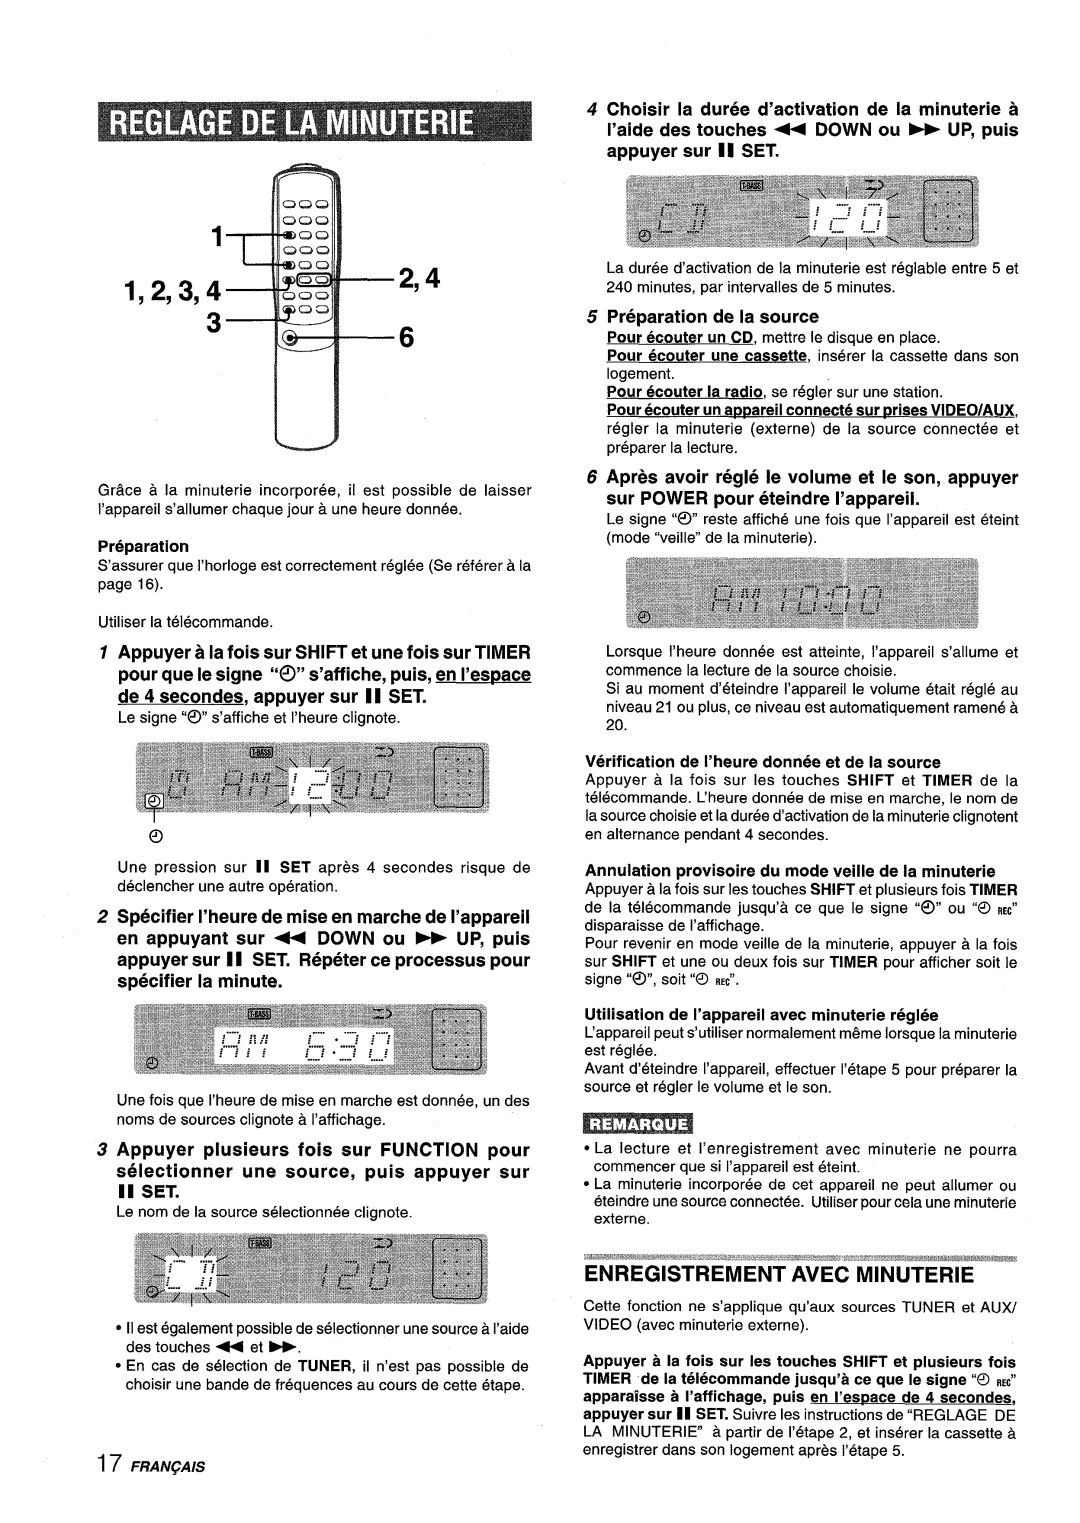 Aiwa XM-M25 manual Specifier I’heure de mise en marche de I’appareil, Appuyer plusieurs fois sur FUNCTION pour, 2,4 1,2,3,4 